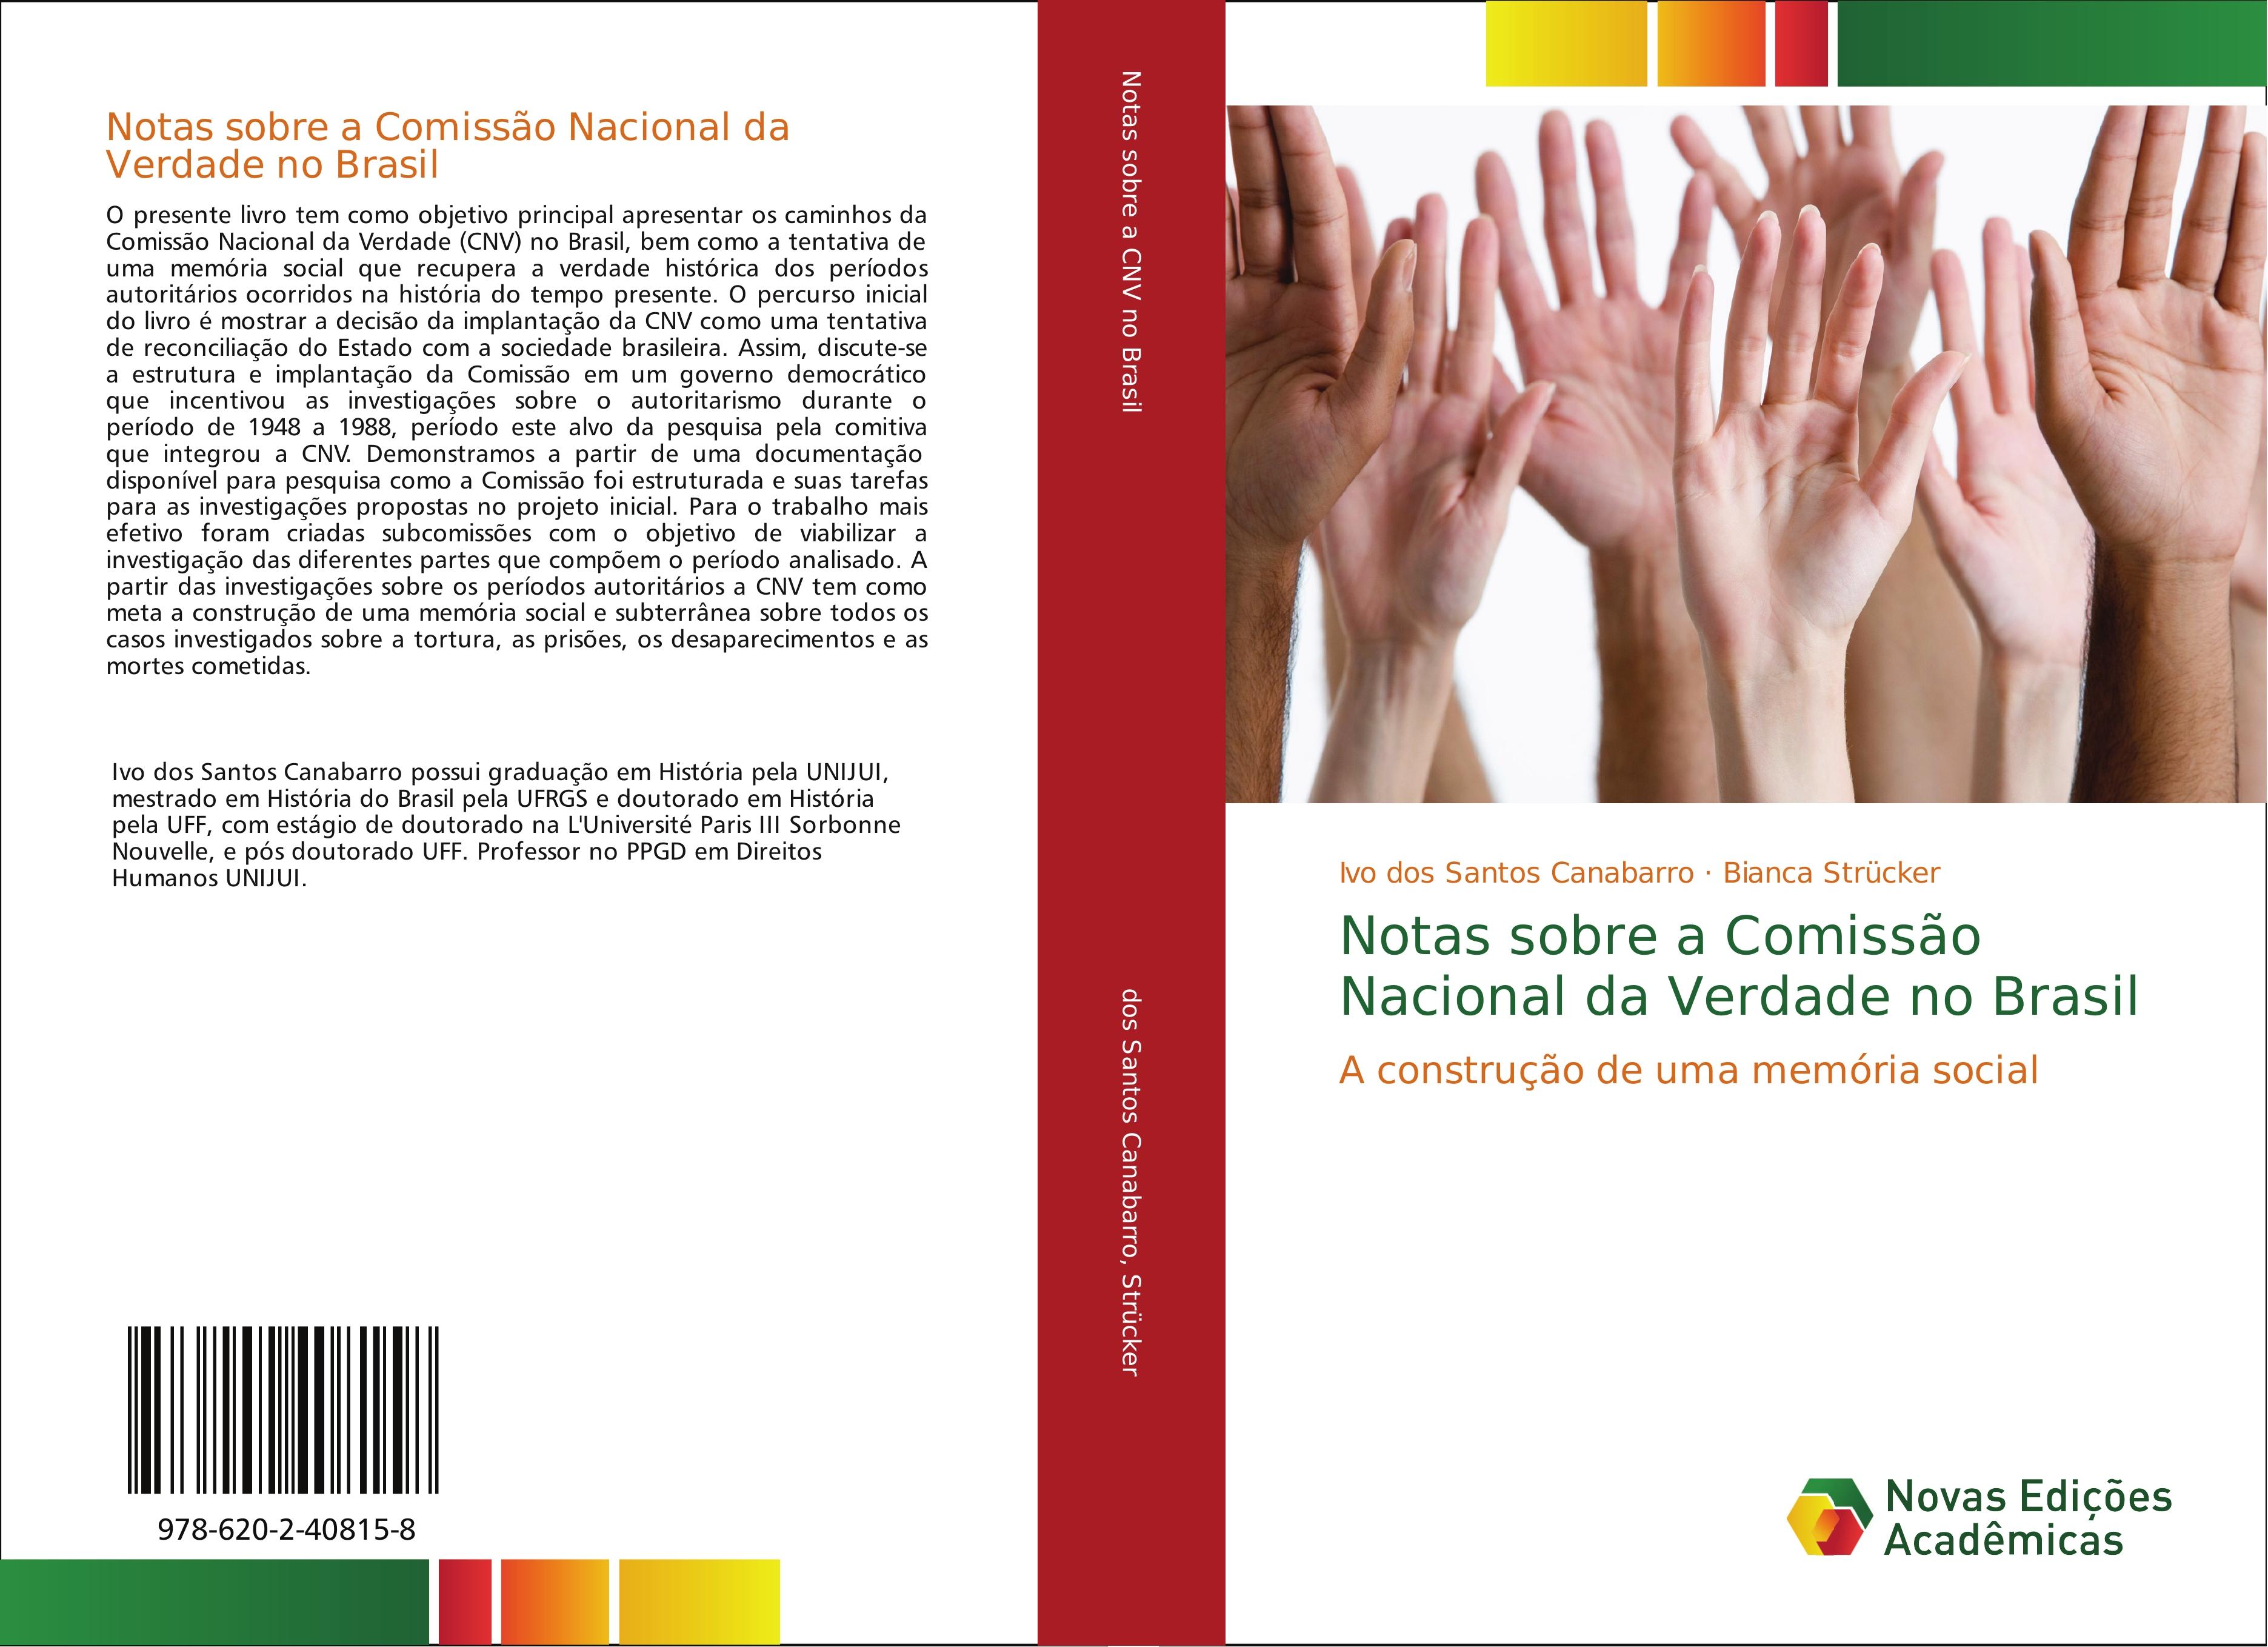 Notas sobre a Comissão Nacional da Verdade no Brasil - Ivo dos Santos Canabarro Bianca Struecker